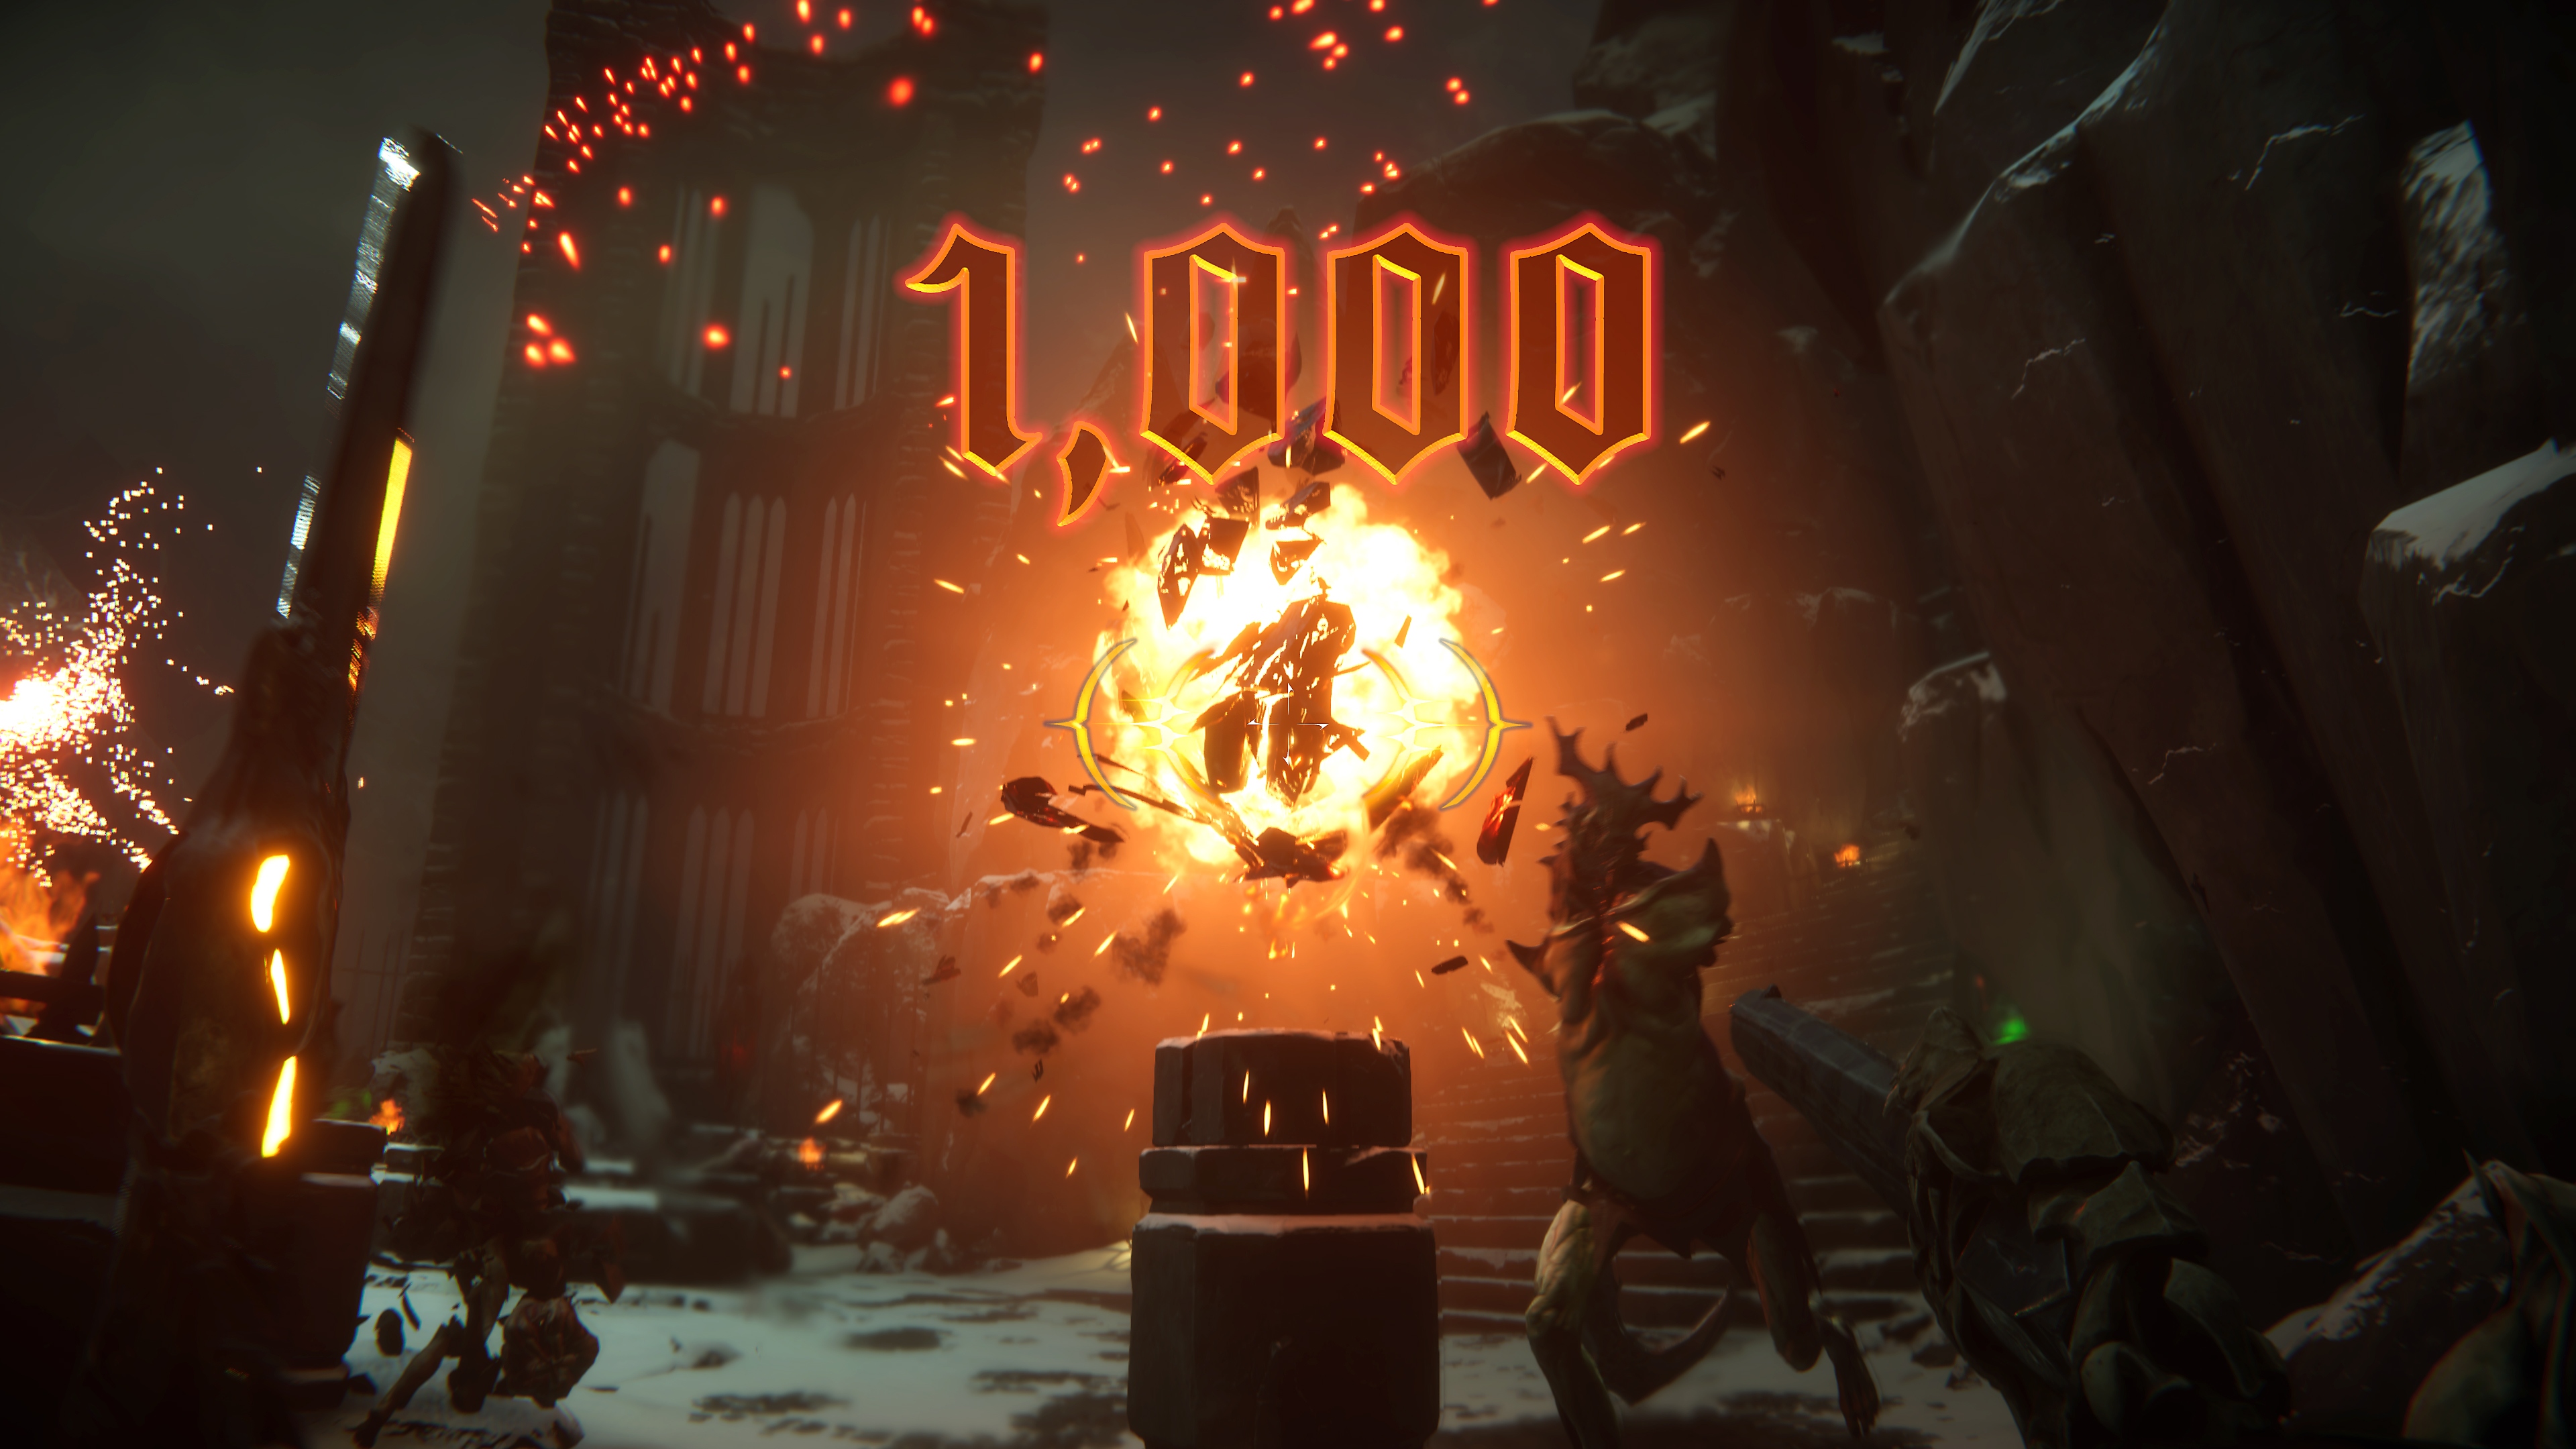 《Metal: Hellsinger》螢幕截圖，描繪畫面中心發生大爆炸，並顯示'1000'點分數。